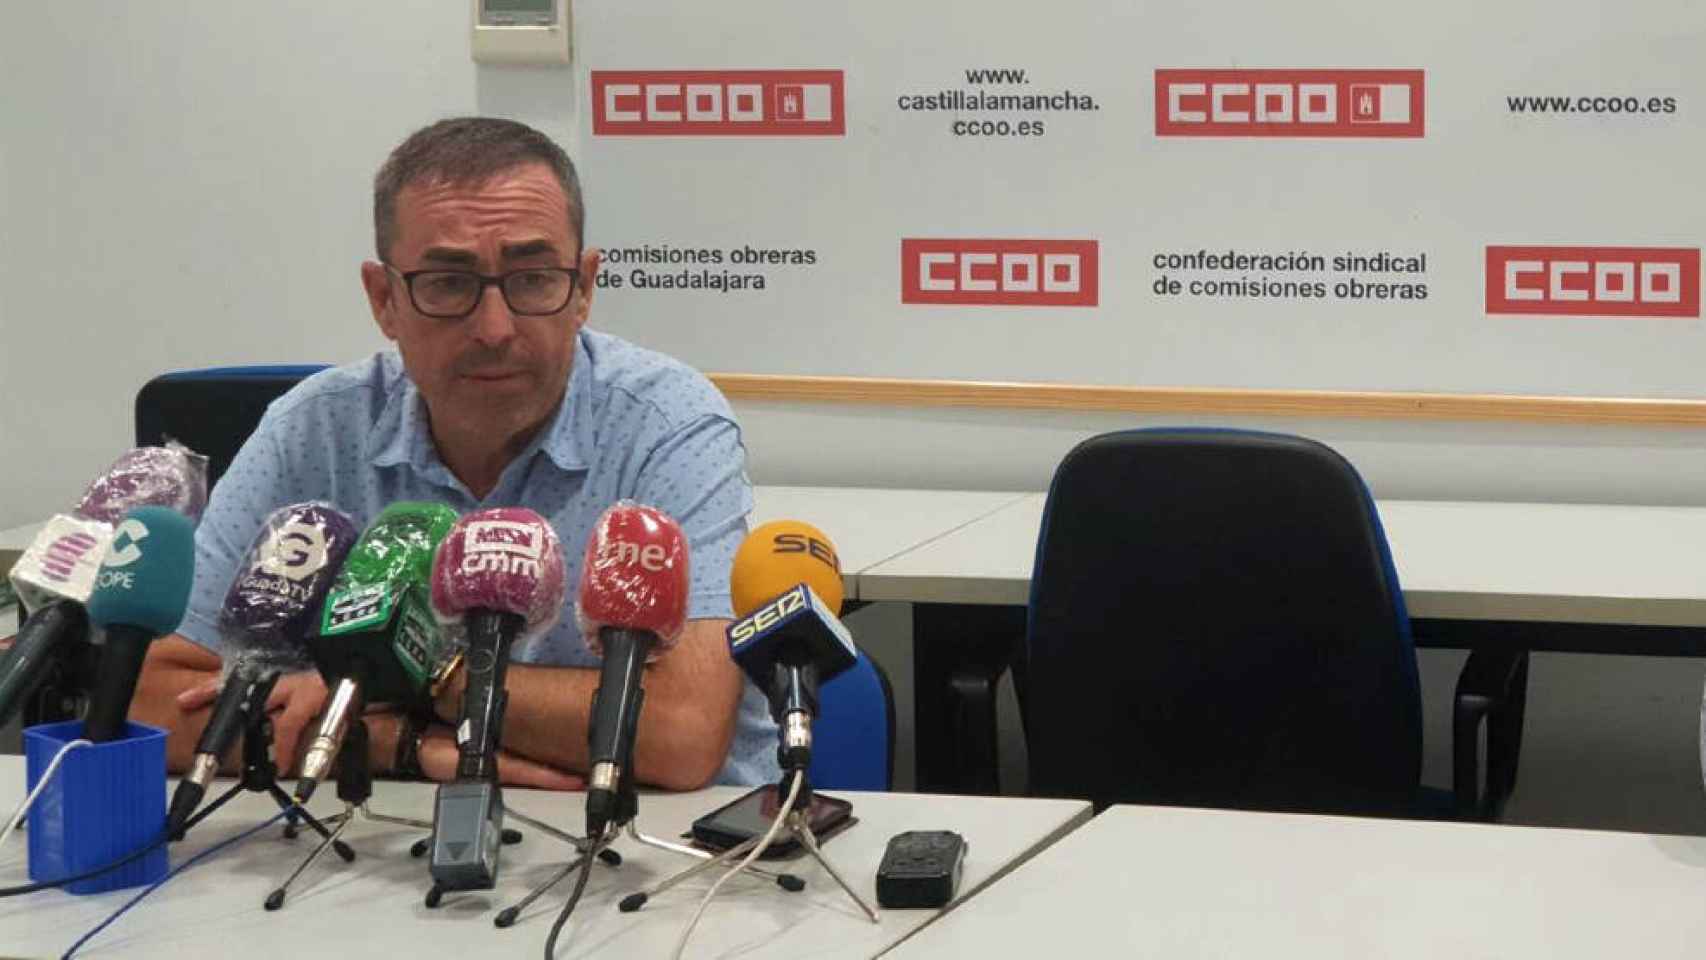 Paco de la Rosa, secretario general de CCOO de Castilla-La Mancha